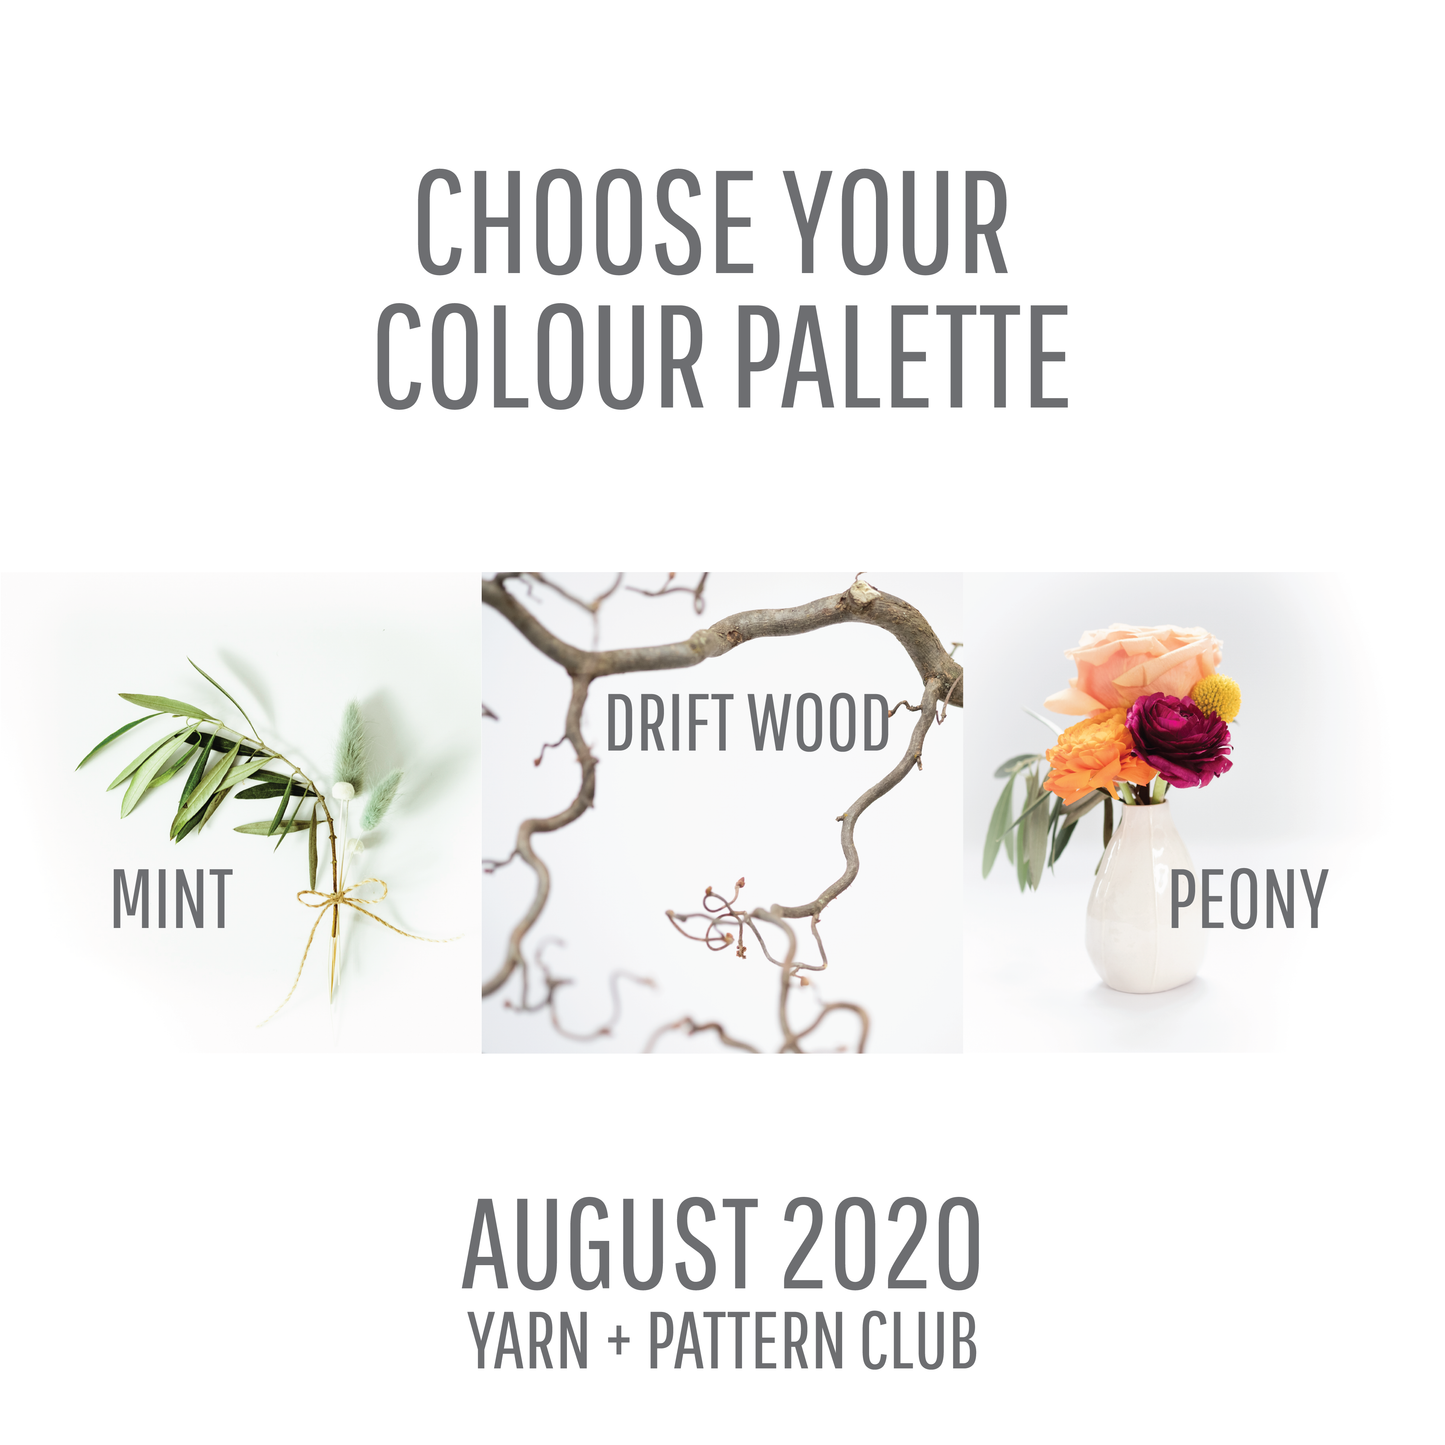 Yarn + Pattern Club : August 2020